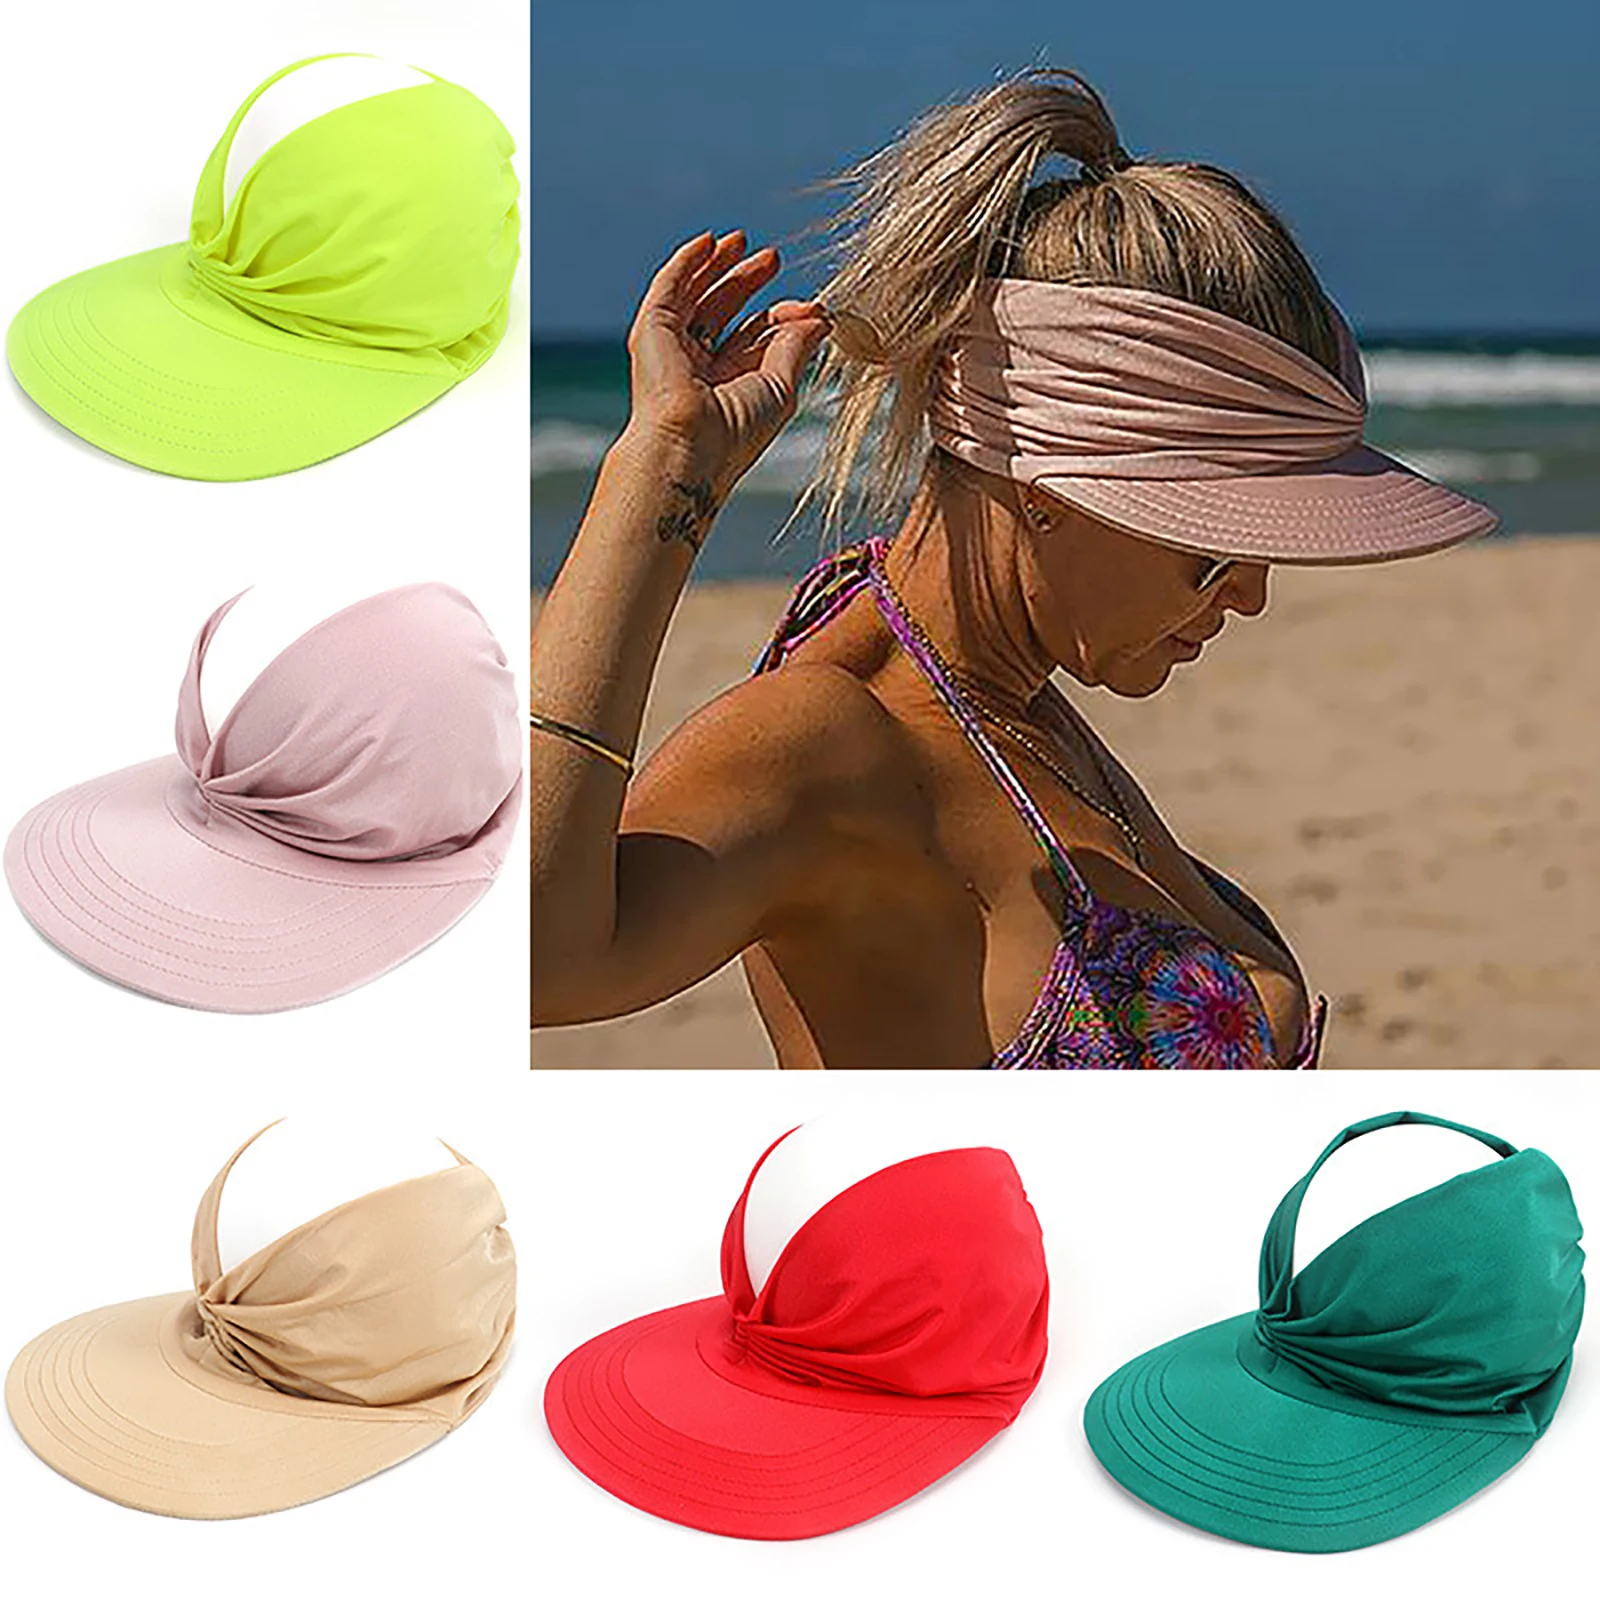 

Шляпа Женская Складная с широкими полями, Солнцезащитная шапка с защитой от ультрафиолета, эластичная, дышащая, для пляжа, Повседневная Ули...